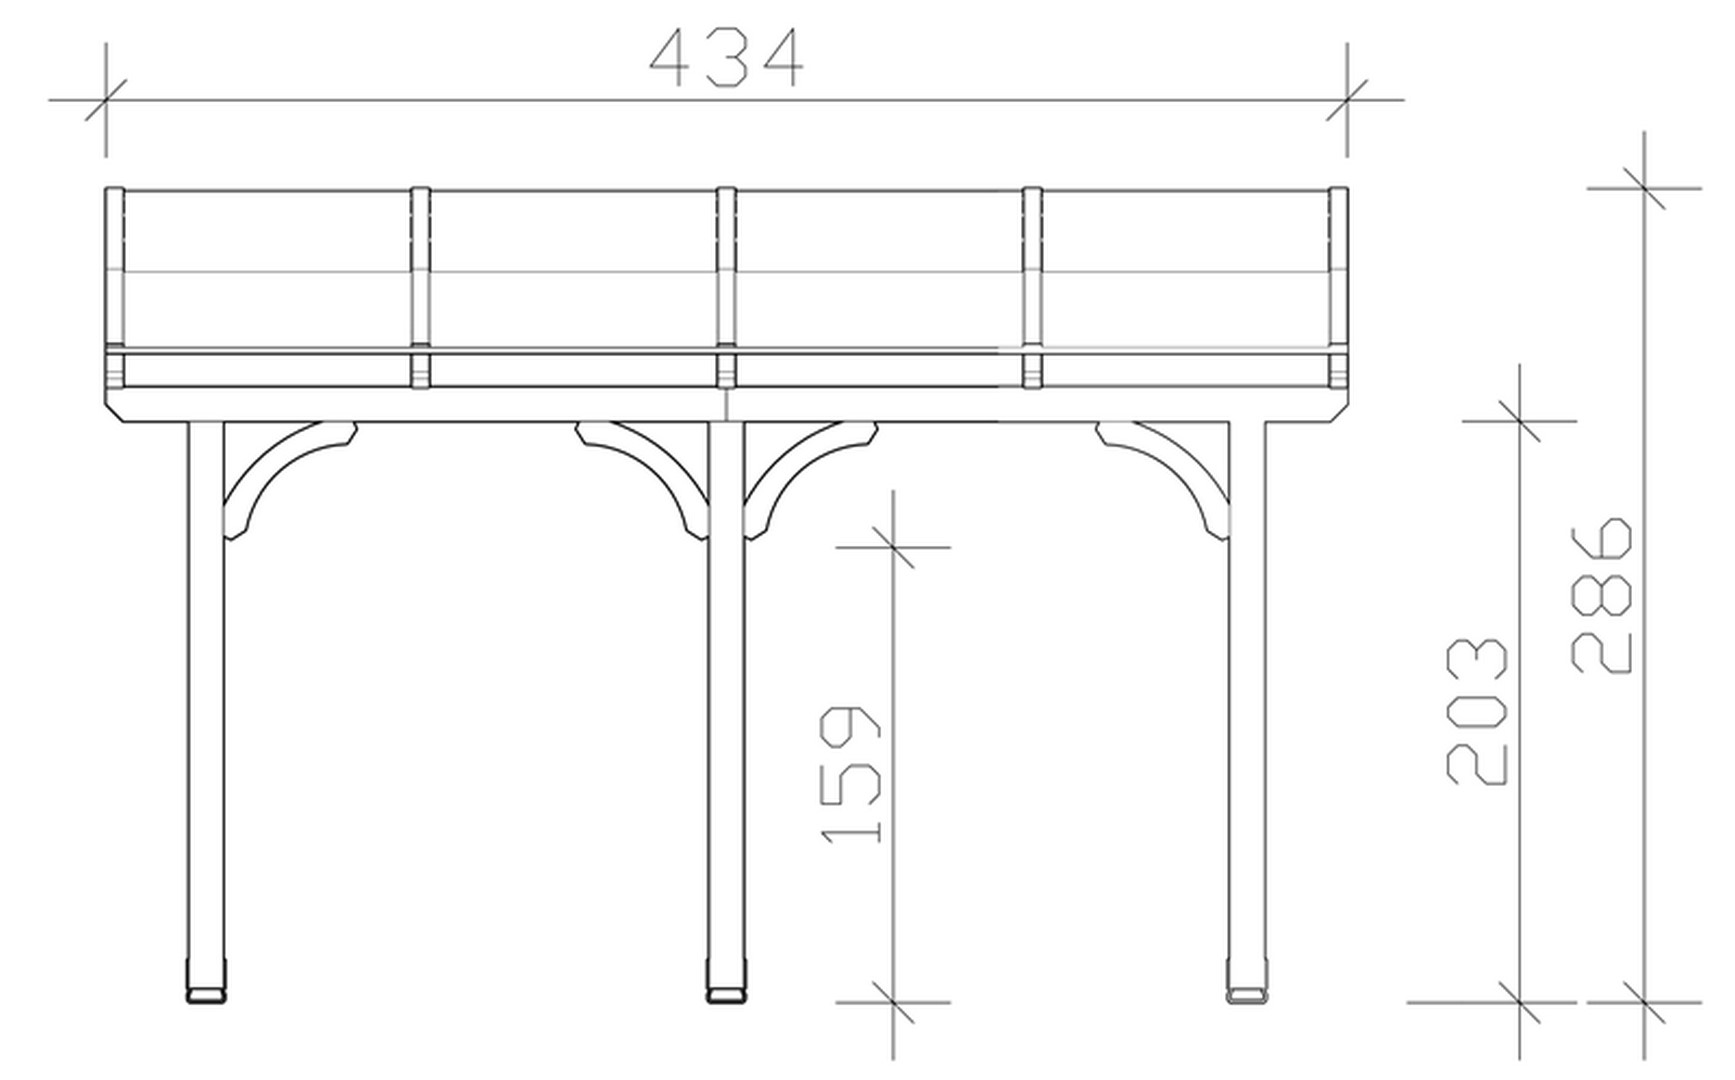 Skan Holz Terrassenüberdachung Venezia 434 x 289 cm, Leimholz, Doppelstegplatten